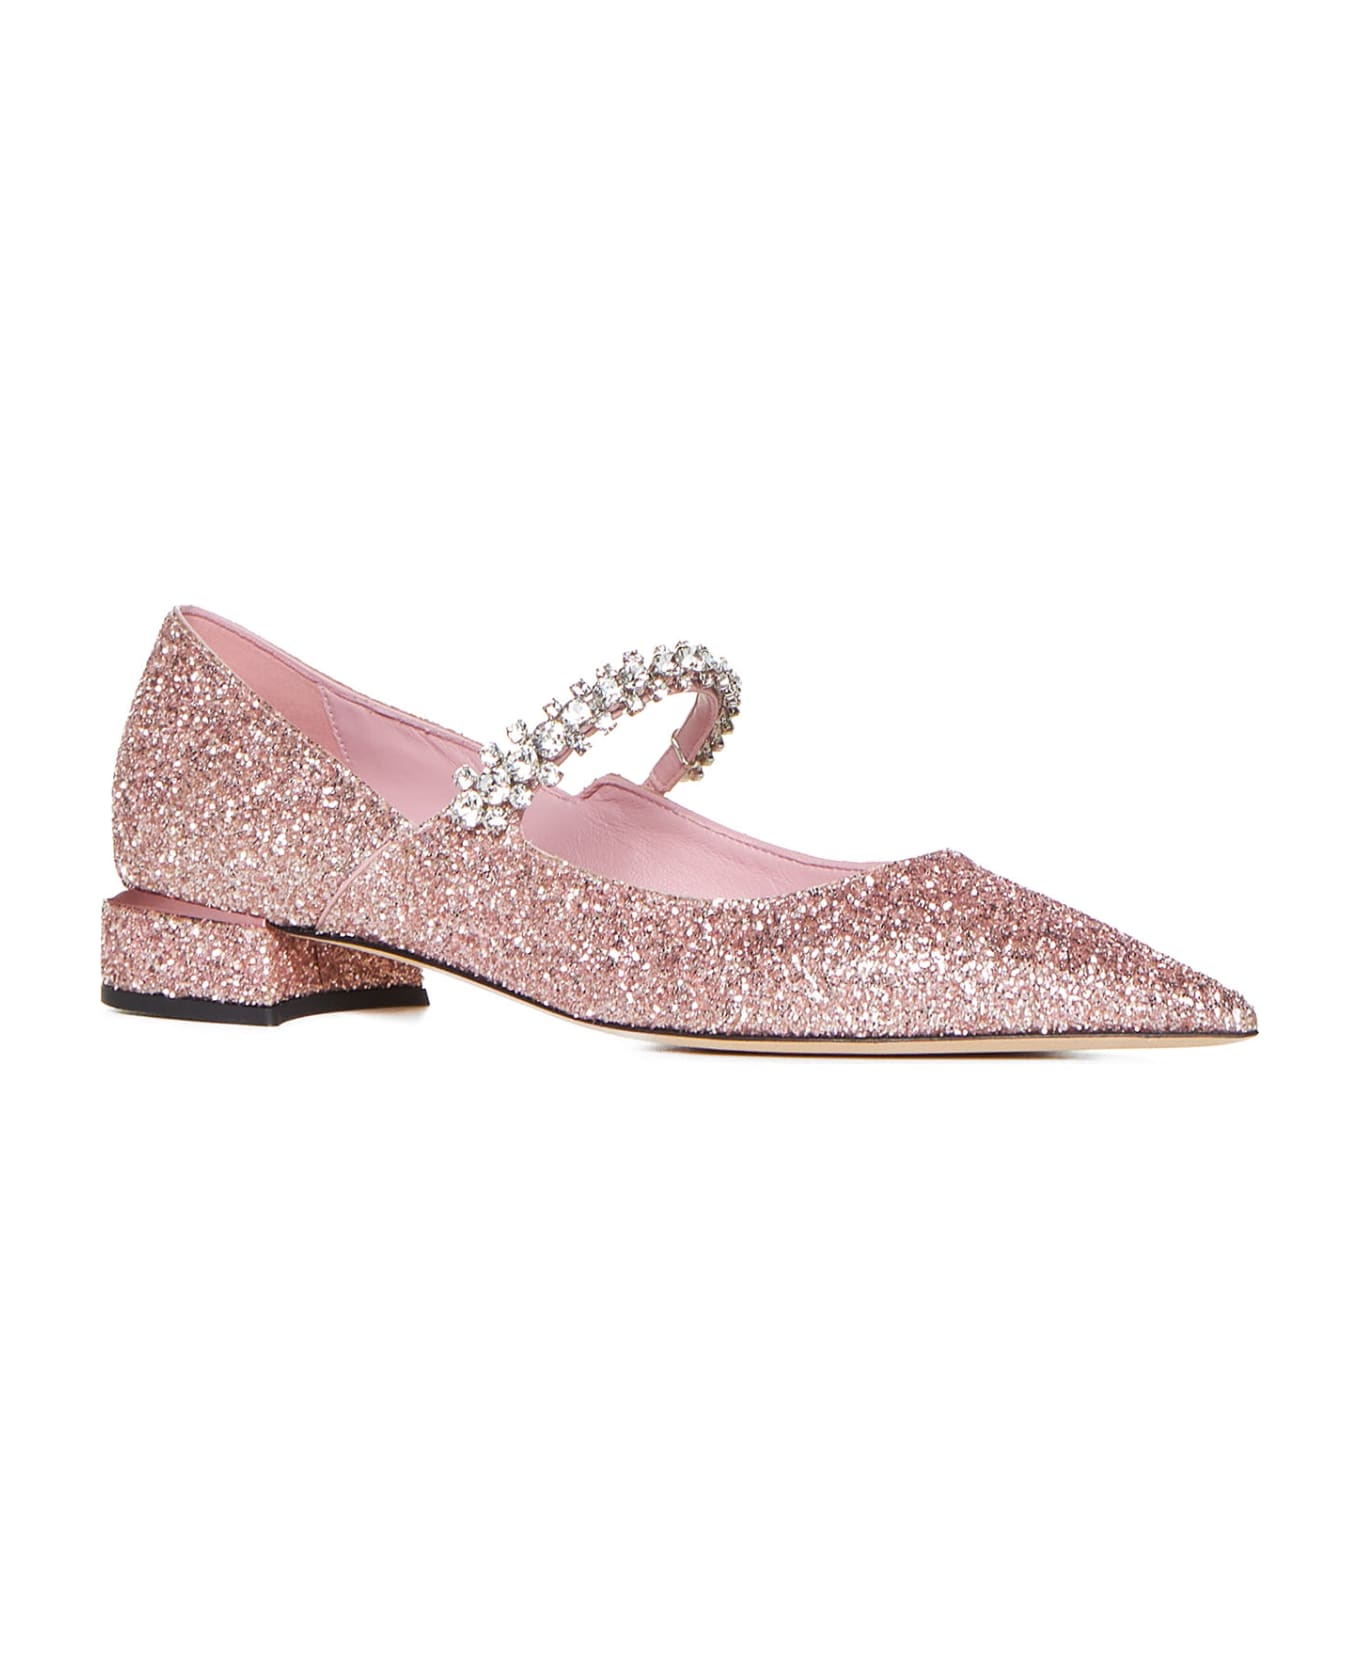 Jimmy Choo Flat Shoes - Pink フラットシューズ